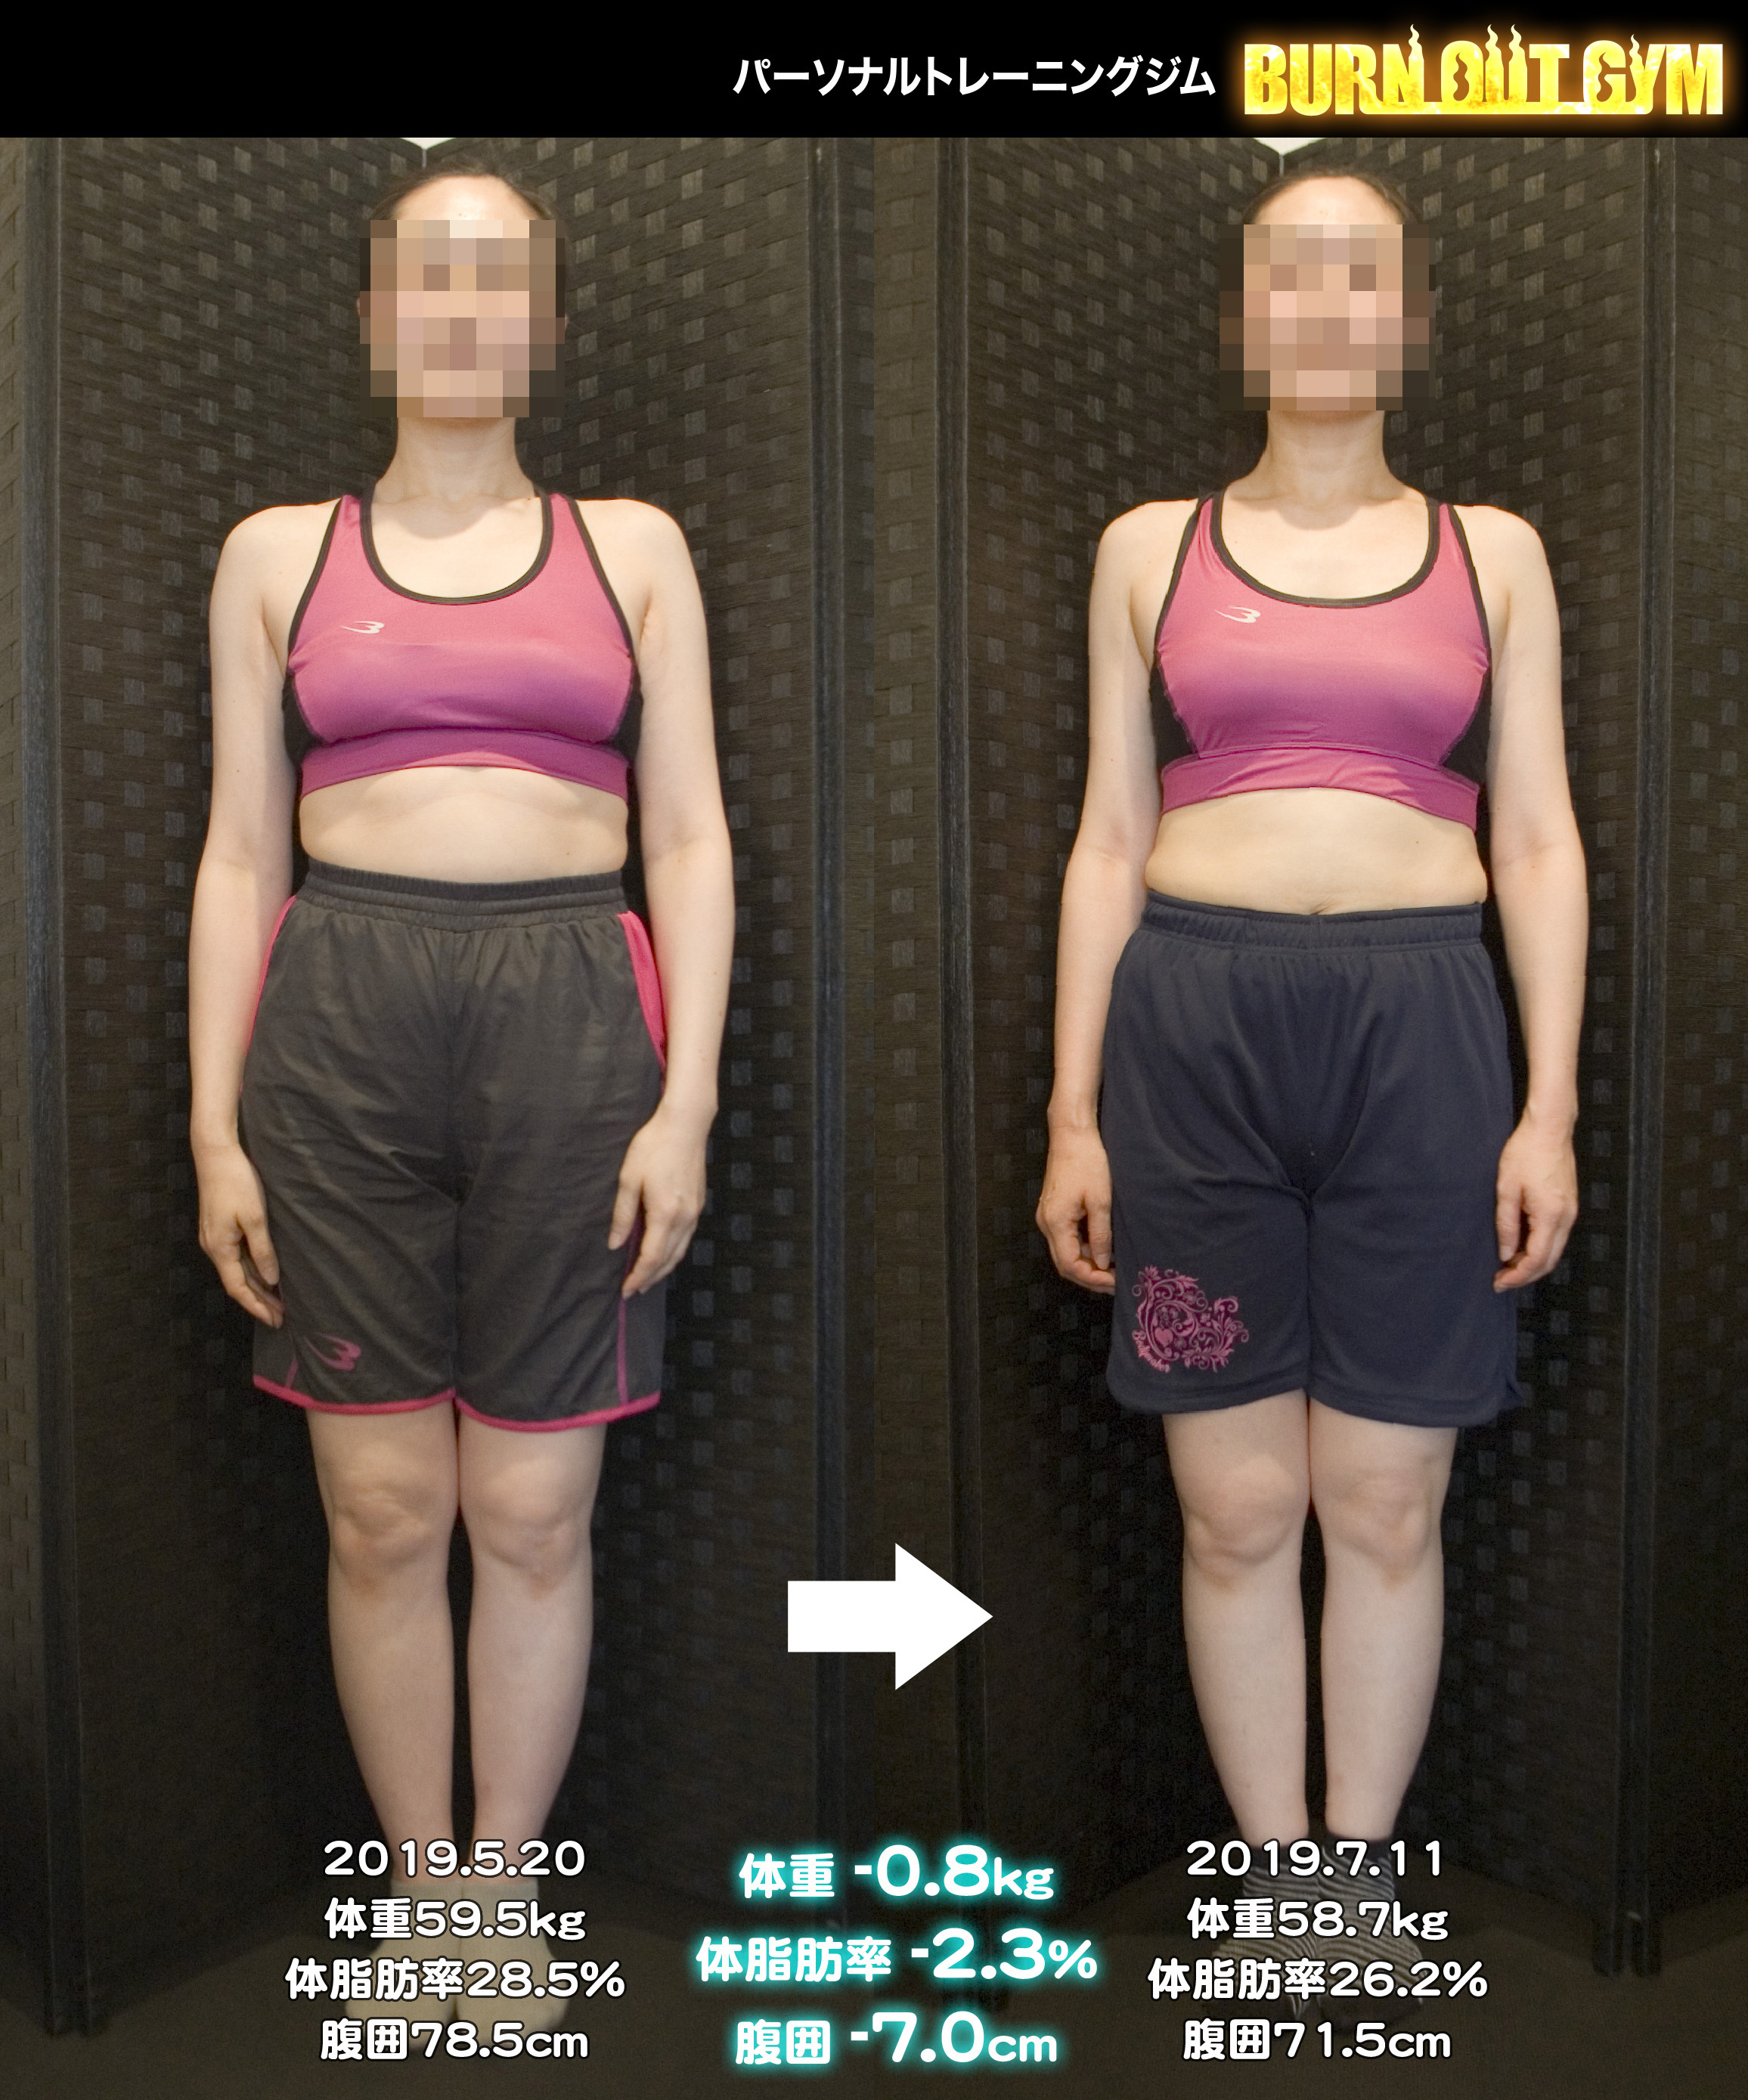 40代女性身長160cm代の方のダイエット事例 パーソナルトレーニング ダイエットジム Burn Out Gym バーンアウトジム